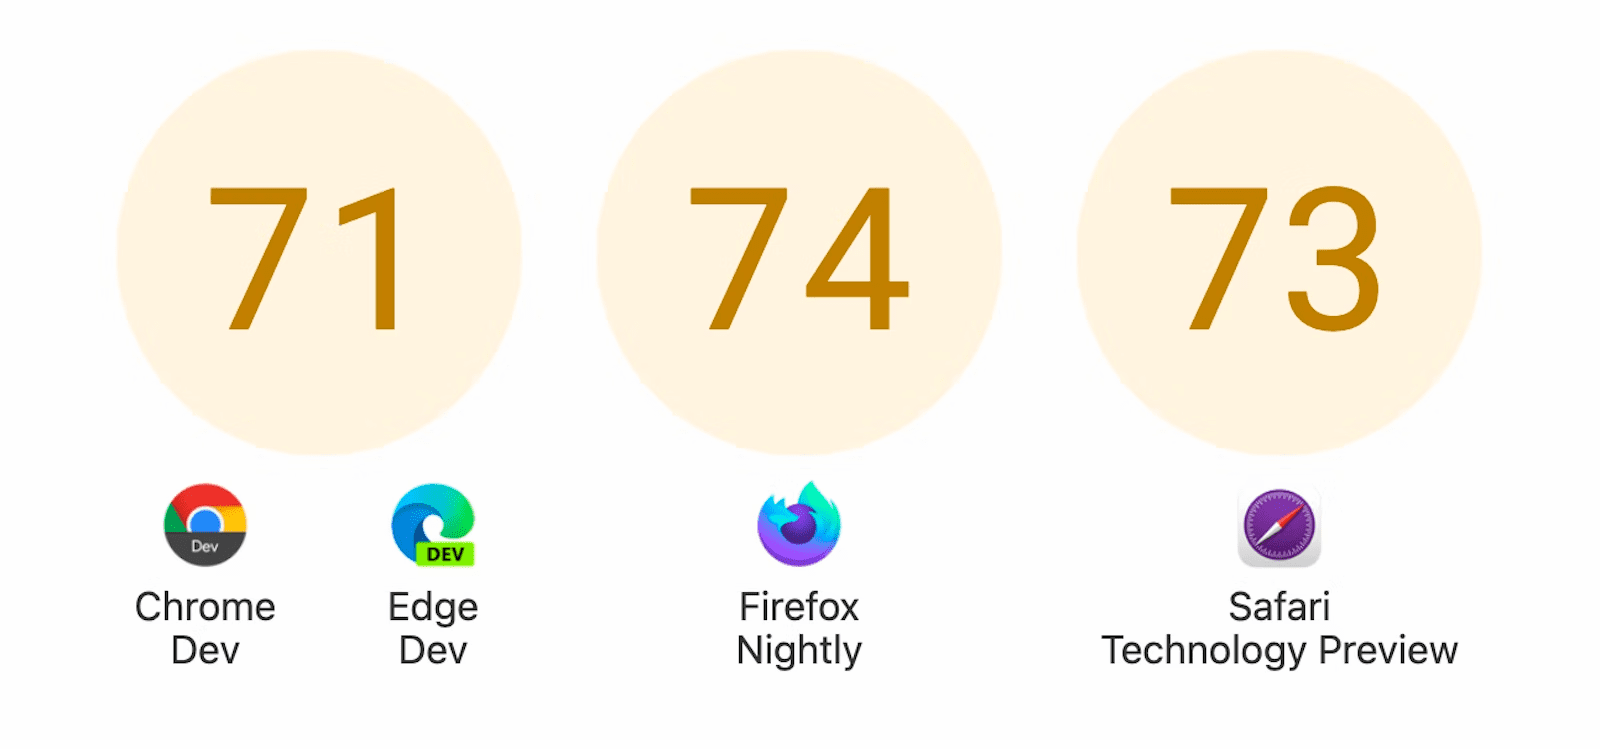 نمایش سه حلقه با امتیاز: 71 برای Chrome Dev و Edge Dev، 74 برای Firefox Nightly، و 73 برای Safari Technology Preview.